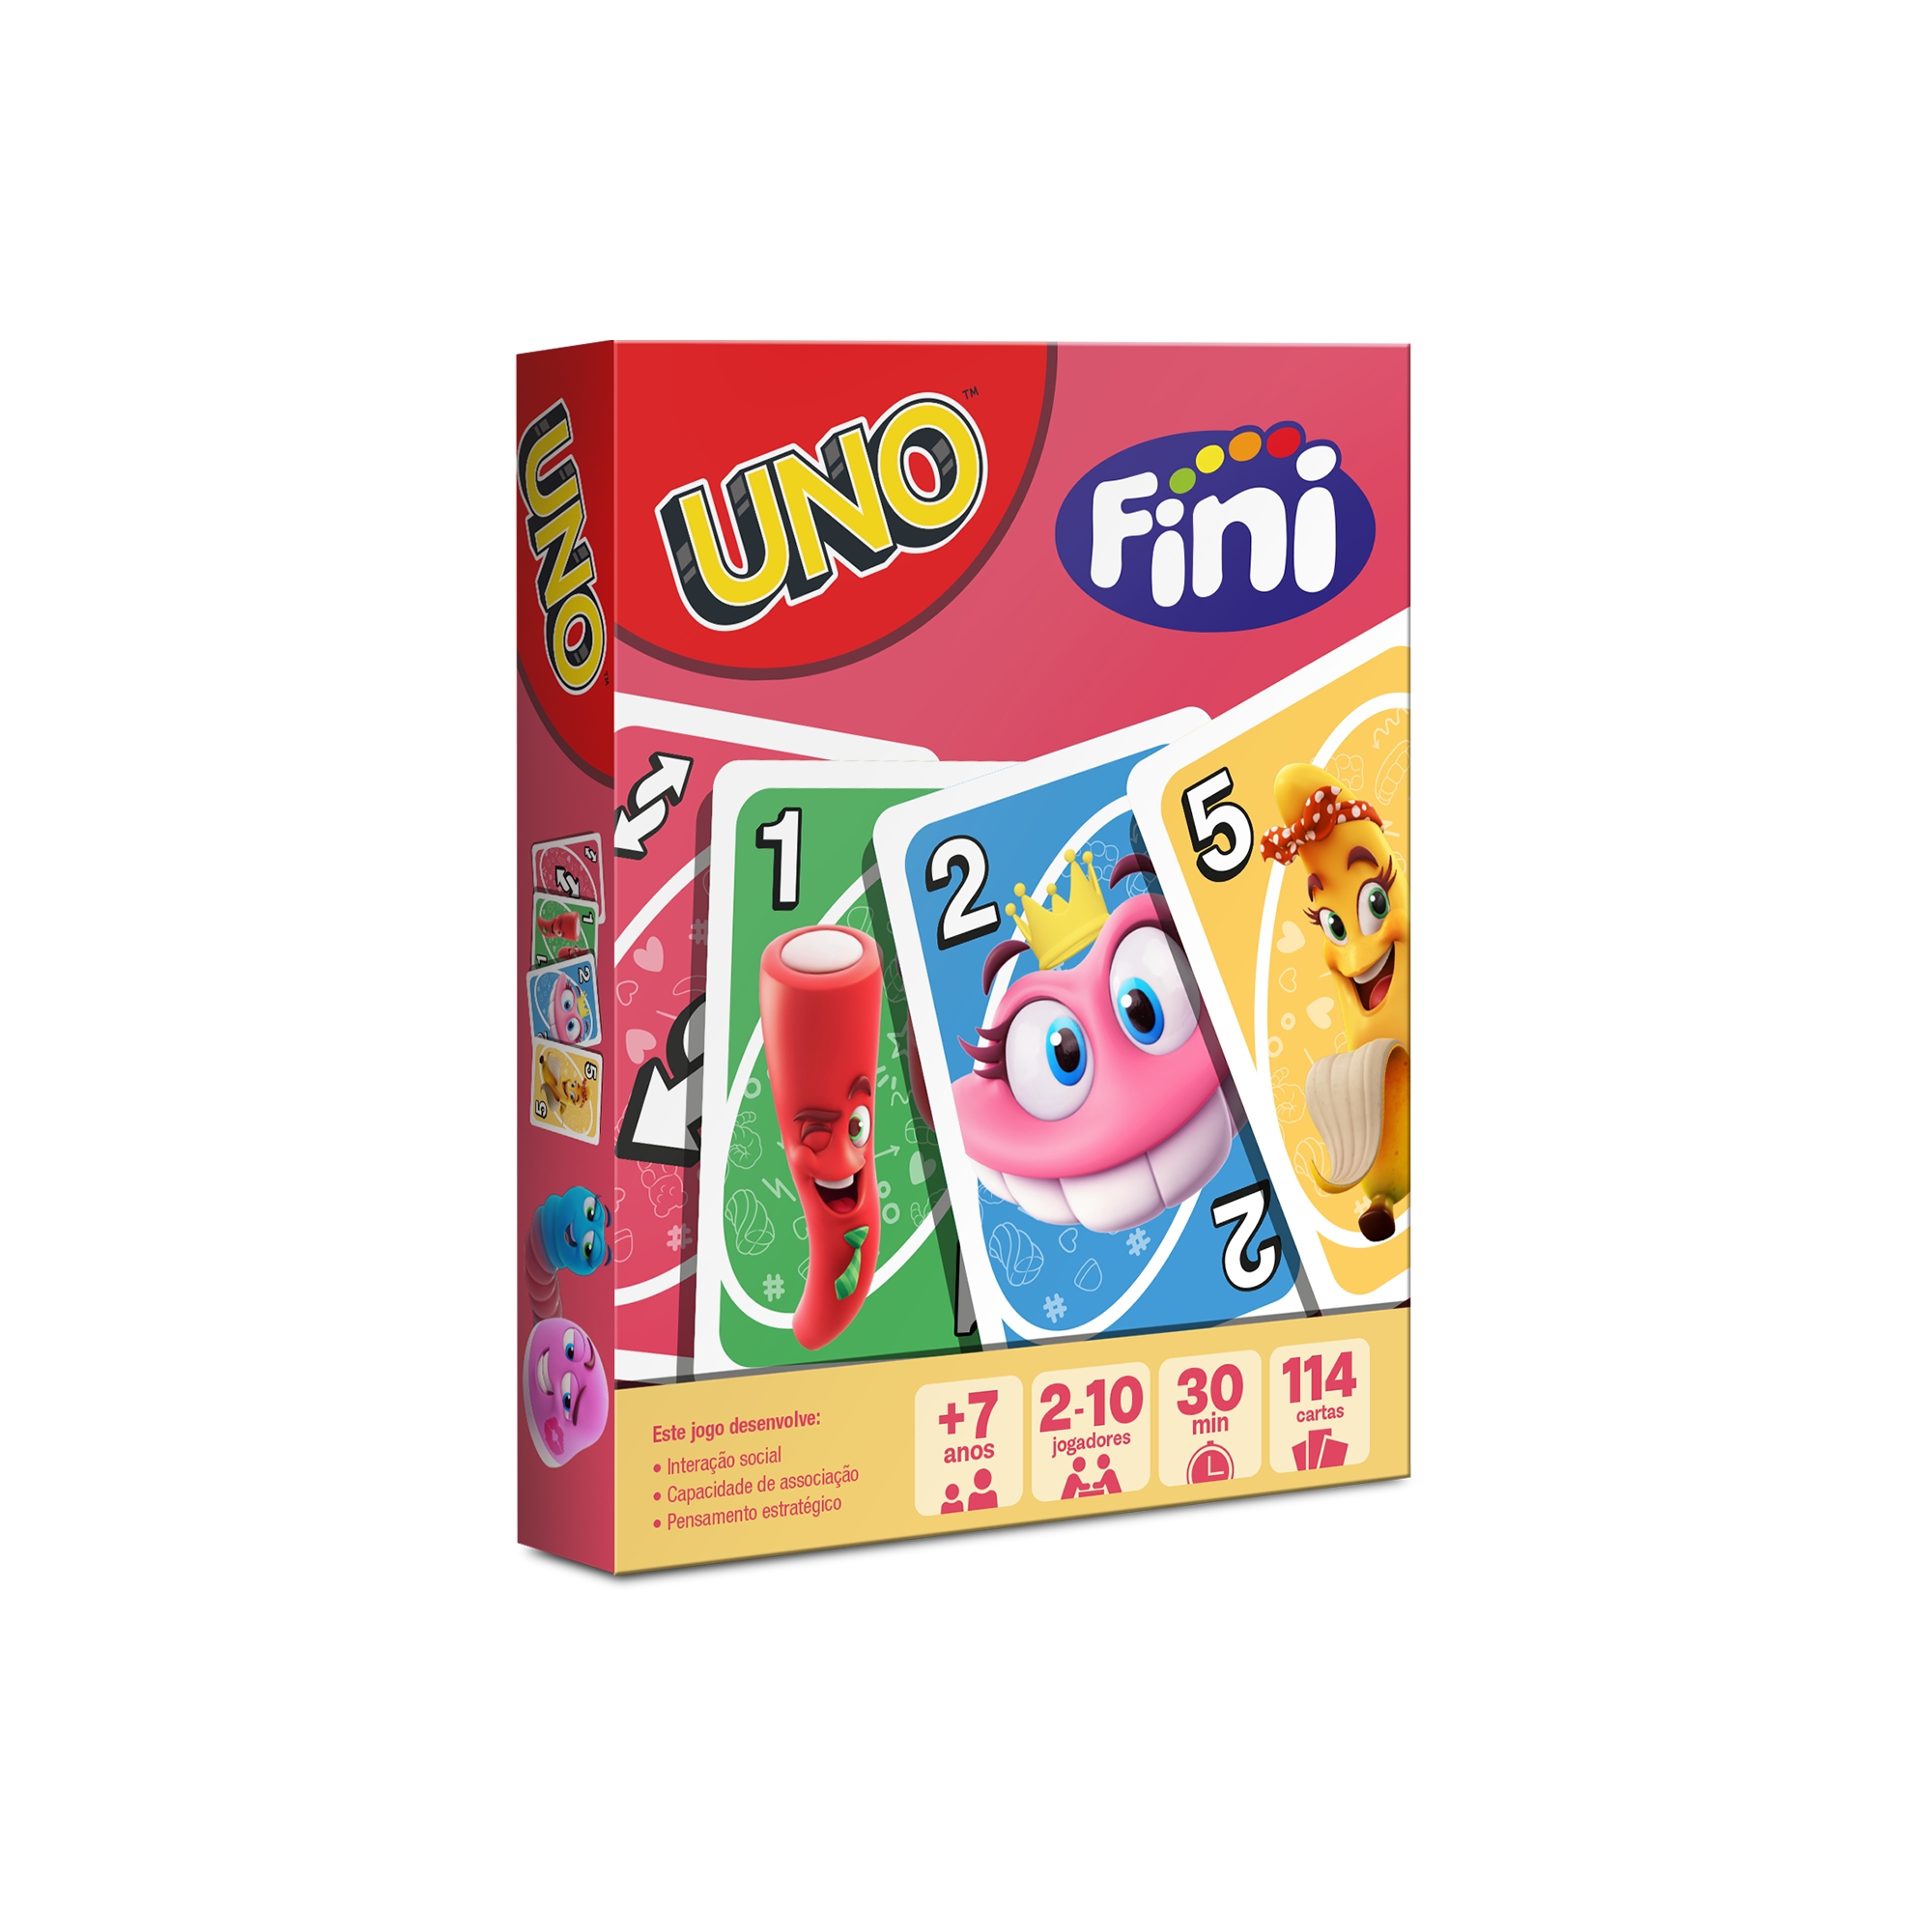 Fini e Mattel lançam edição especial do jogo UNO - Design Culture